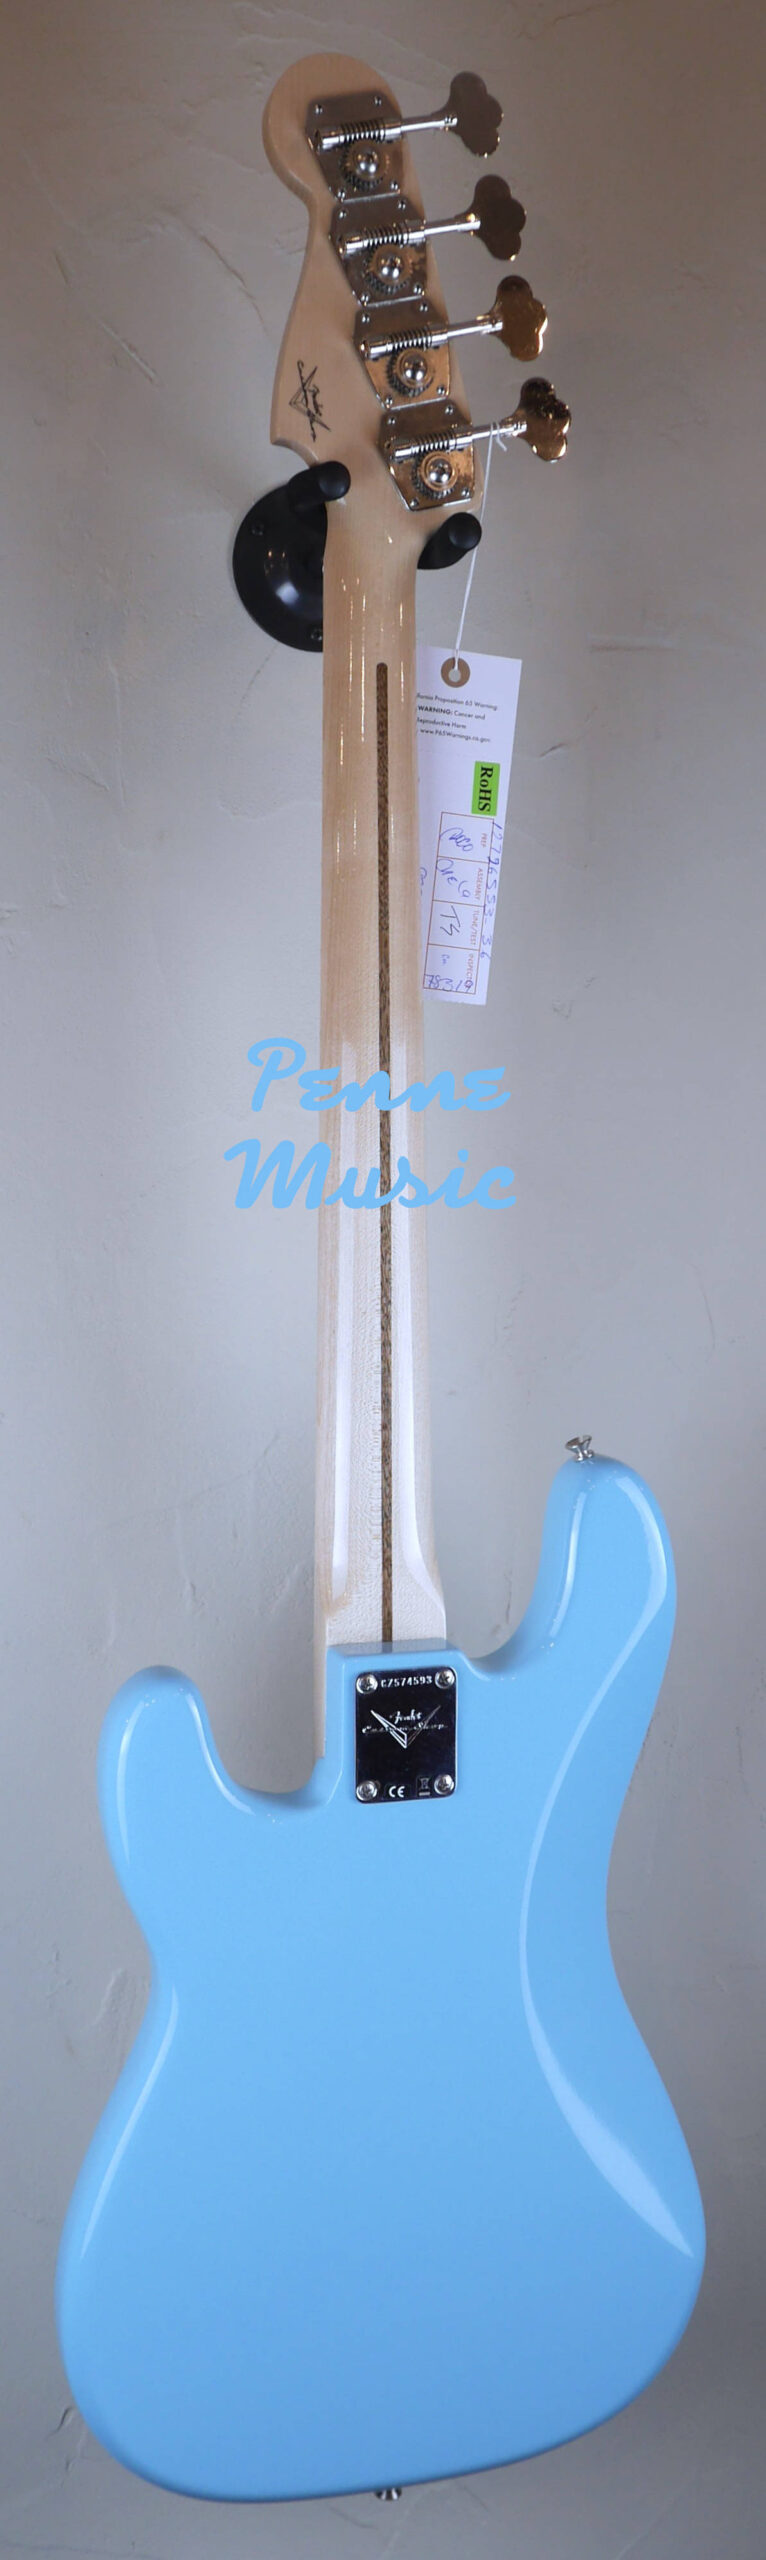 Fender Custom Shop Vintage Custom 1957 Precision Bass Daphne Blue NOS TCP 3